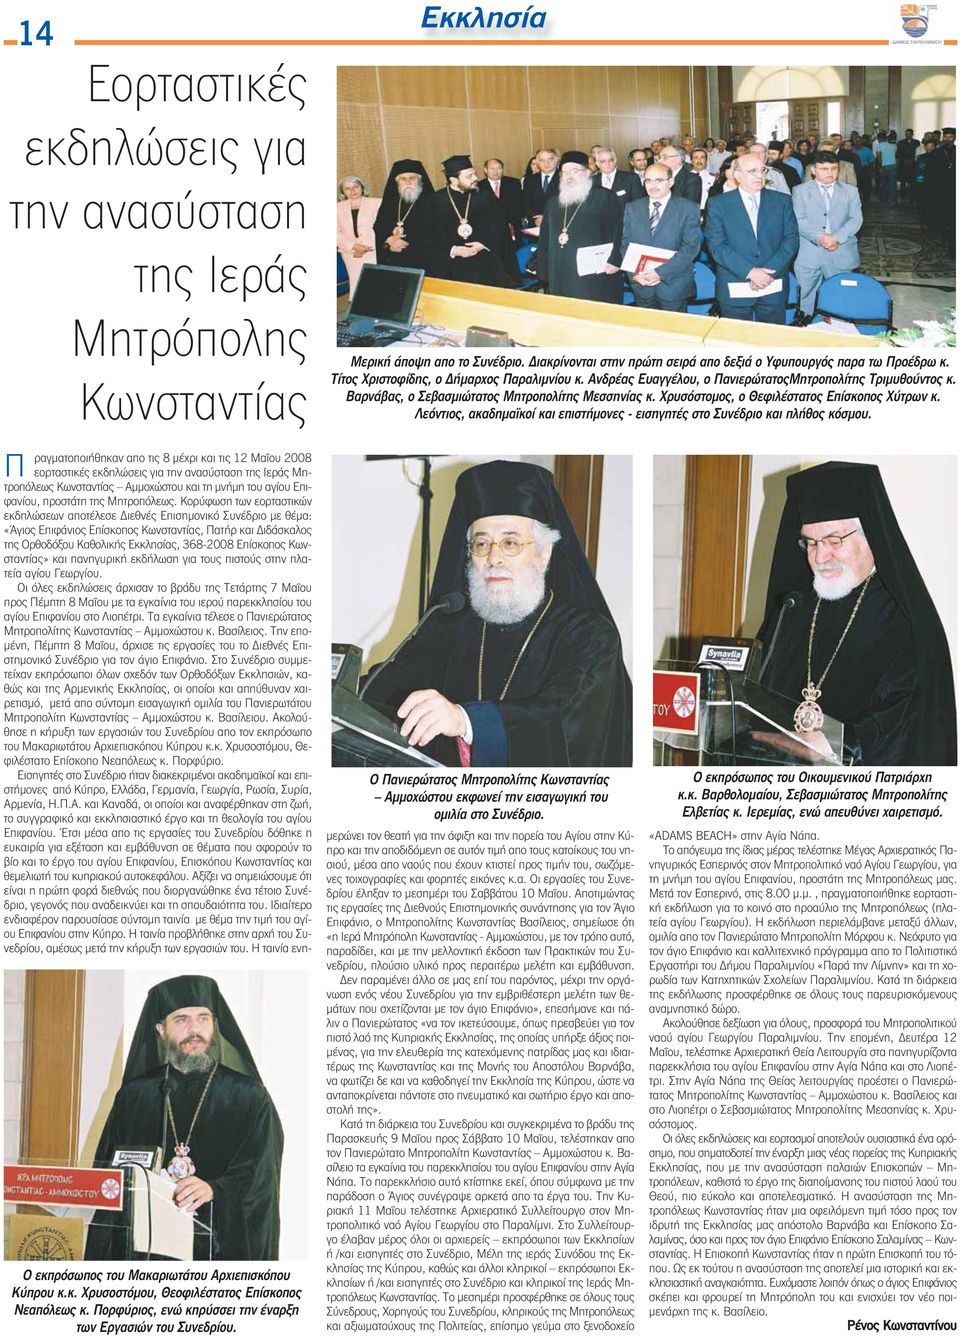 Χρυσόστομος, ο Θεφιλέστατος Επίσκοπος Χύτρων κ. Λεόντιος, ακαδημαϊκοί και επιστήμονες - εισηγητές στο Συνέδριο και πλήθος κόσμου. Π Ο εκπρόσωπος του Μακαριωτάτου Αρχιεπισκόπου Κύπρου κ.κ. Χρυσοστόμου, Θεοφιλέστατος Επίσκοπος Νεαπόλεως κ.